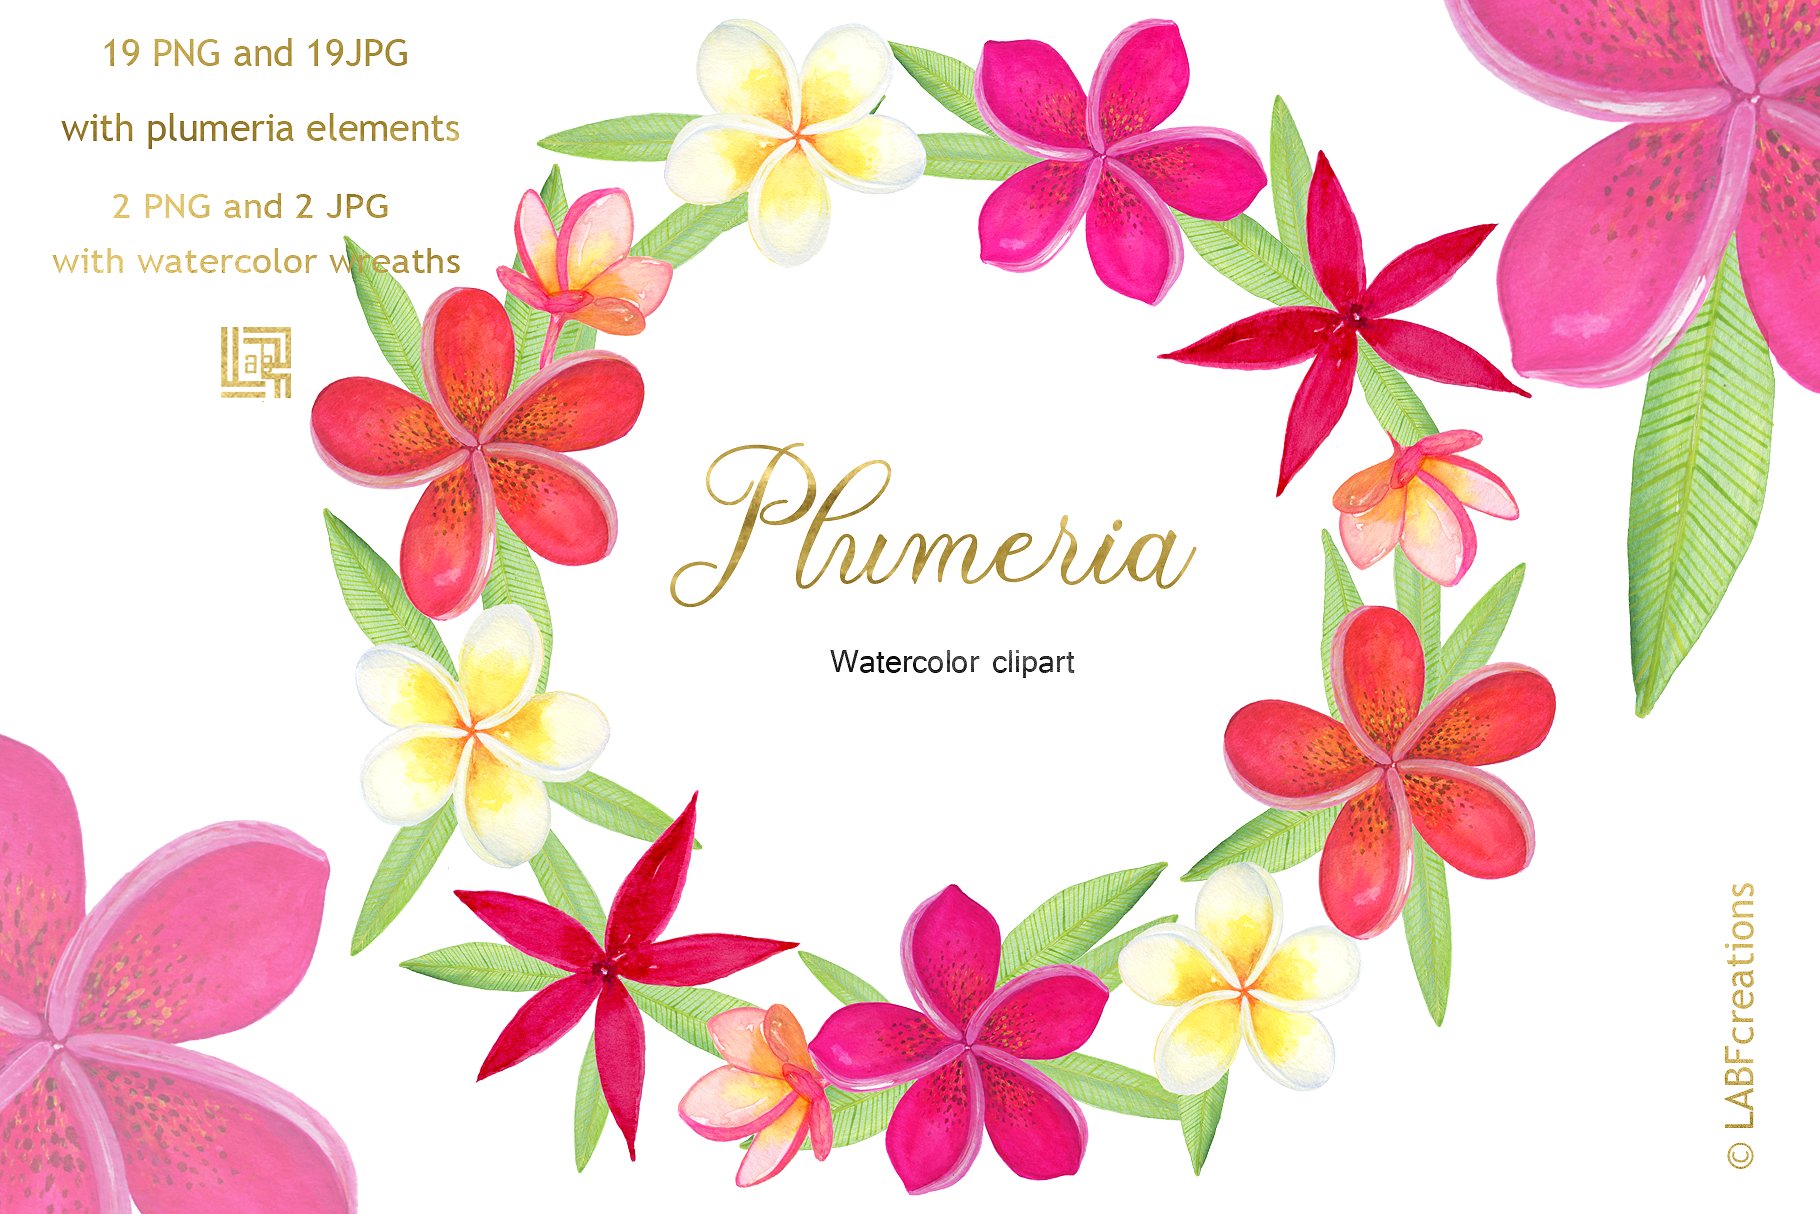 柔和优雅的手绘水彩热带花卉剪贴画 Plumeria Tropical watercolor flowers插图